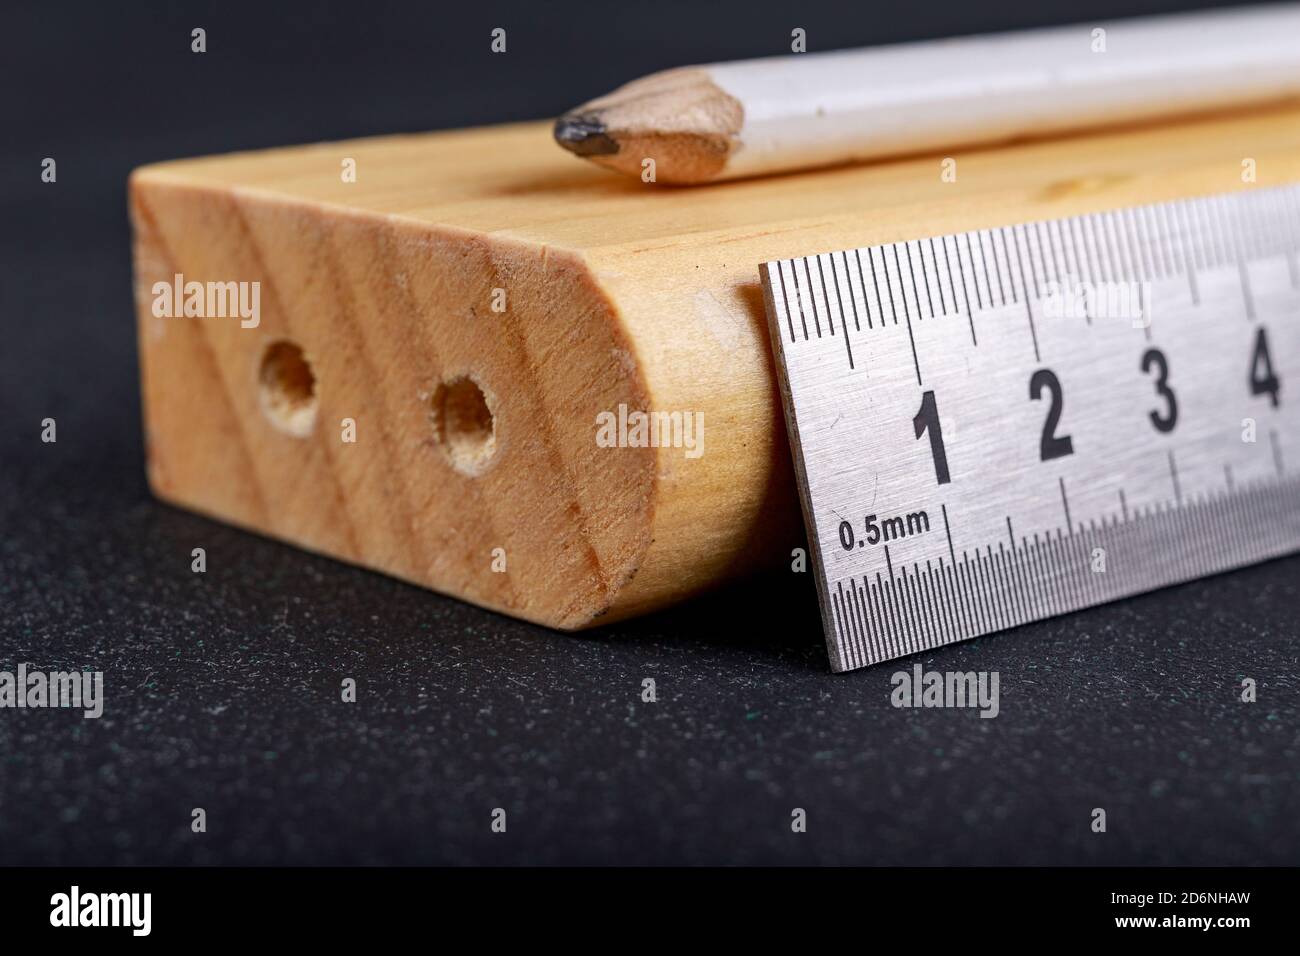 Un rapporteur et une règle métallique pour mesurer les angles dans un  atelier de menuiserie. Accessoires pour mesurer et dessiner dans un atelier  de menuiserie. Lieu de travail - travaux Photo Stock 